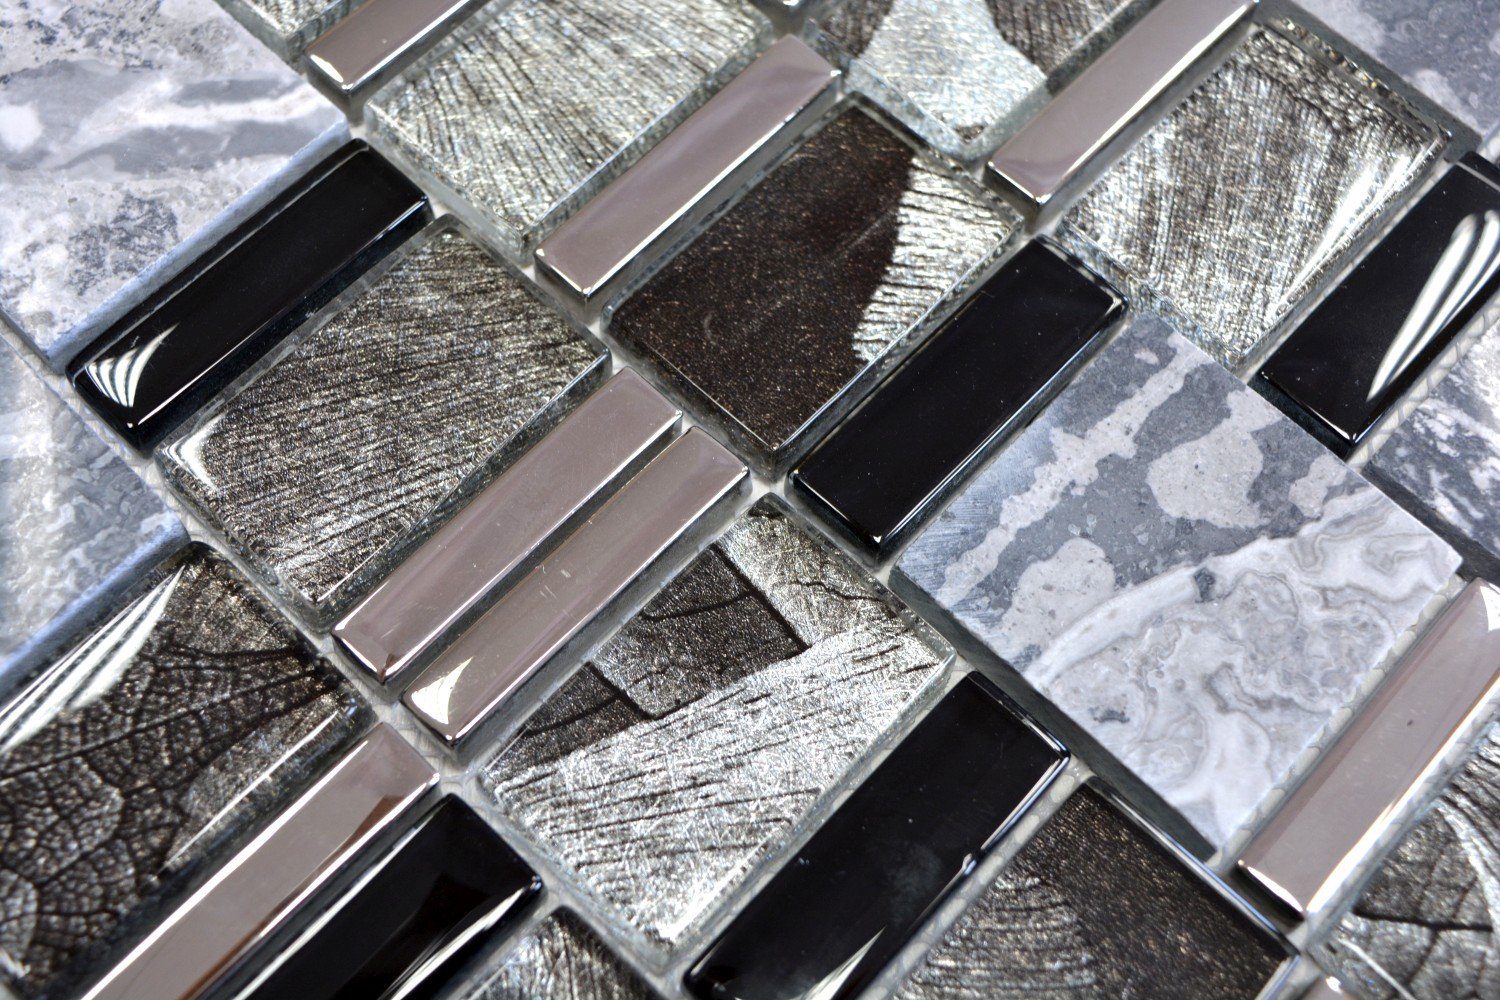 Mosani Mosaikfliesen 10 Naturstein glänzend Glasmosaik / schwarz grau Mosaik Matten